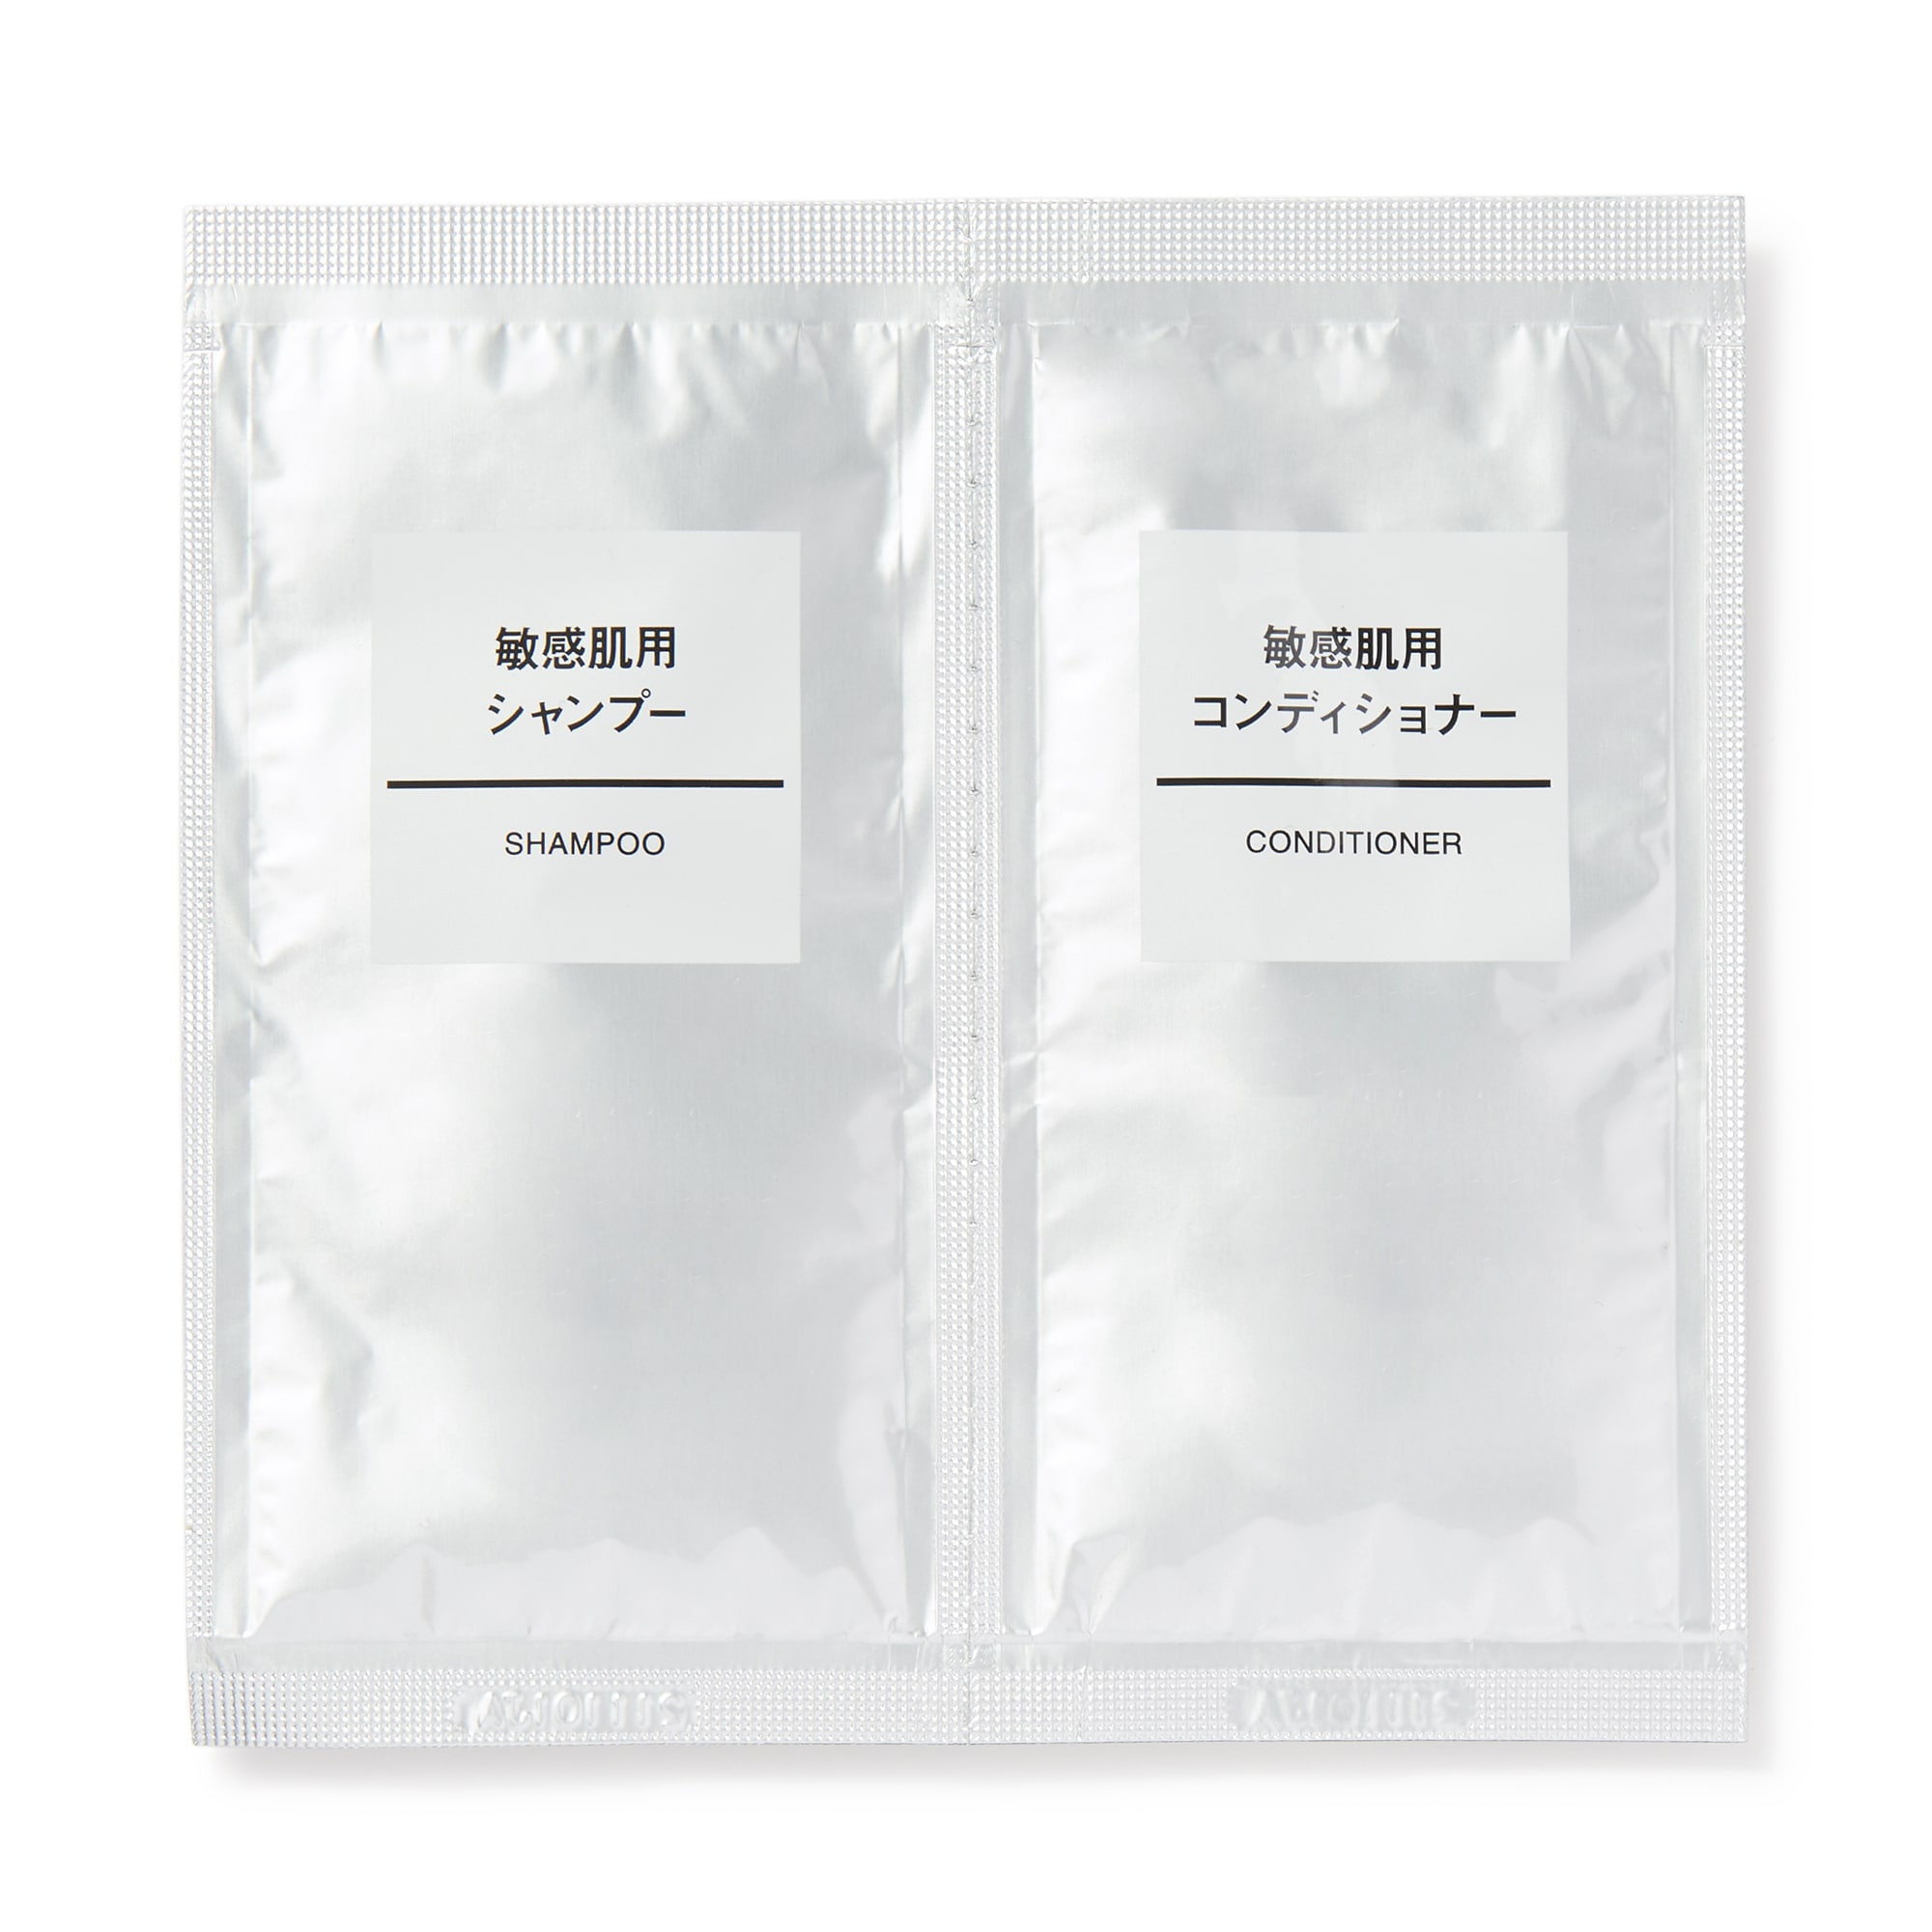 무인양품 일본 민감성 피부용 샴푸/컨디셔너 세트